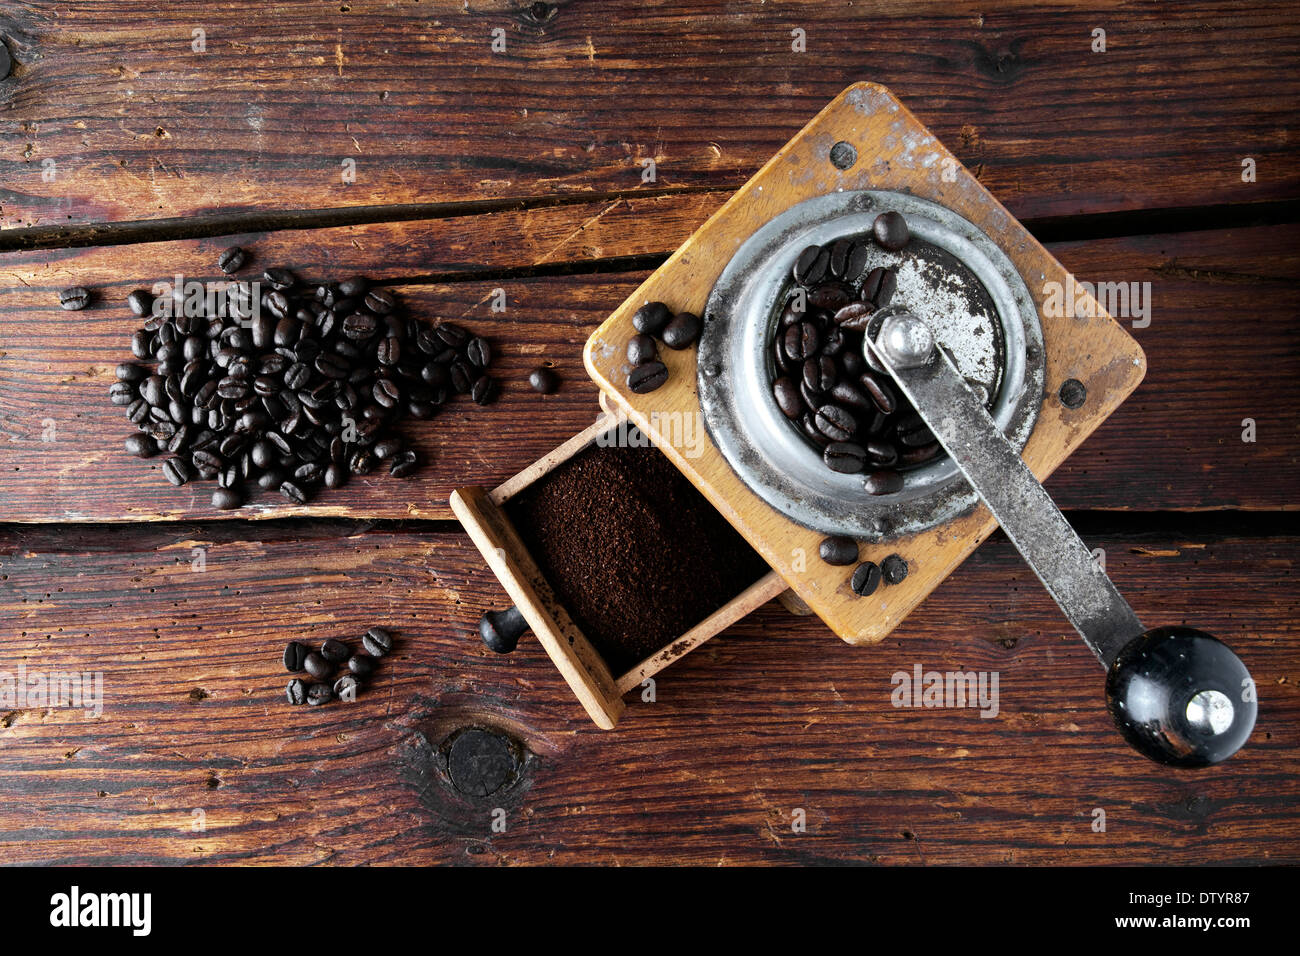 Ancien moulin à café avec café en grains sur une surface en bois Banque D'Images